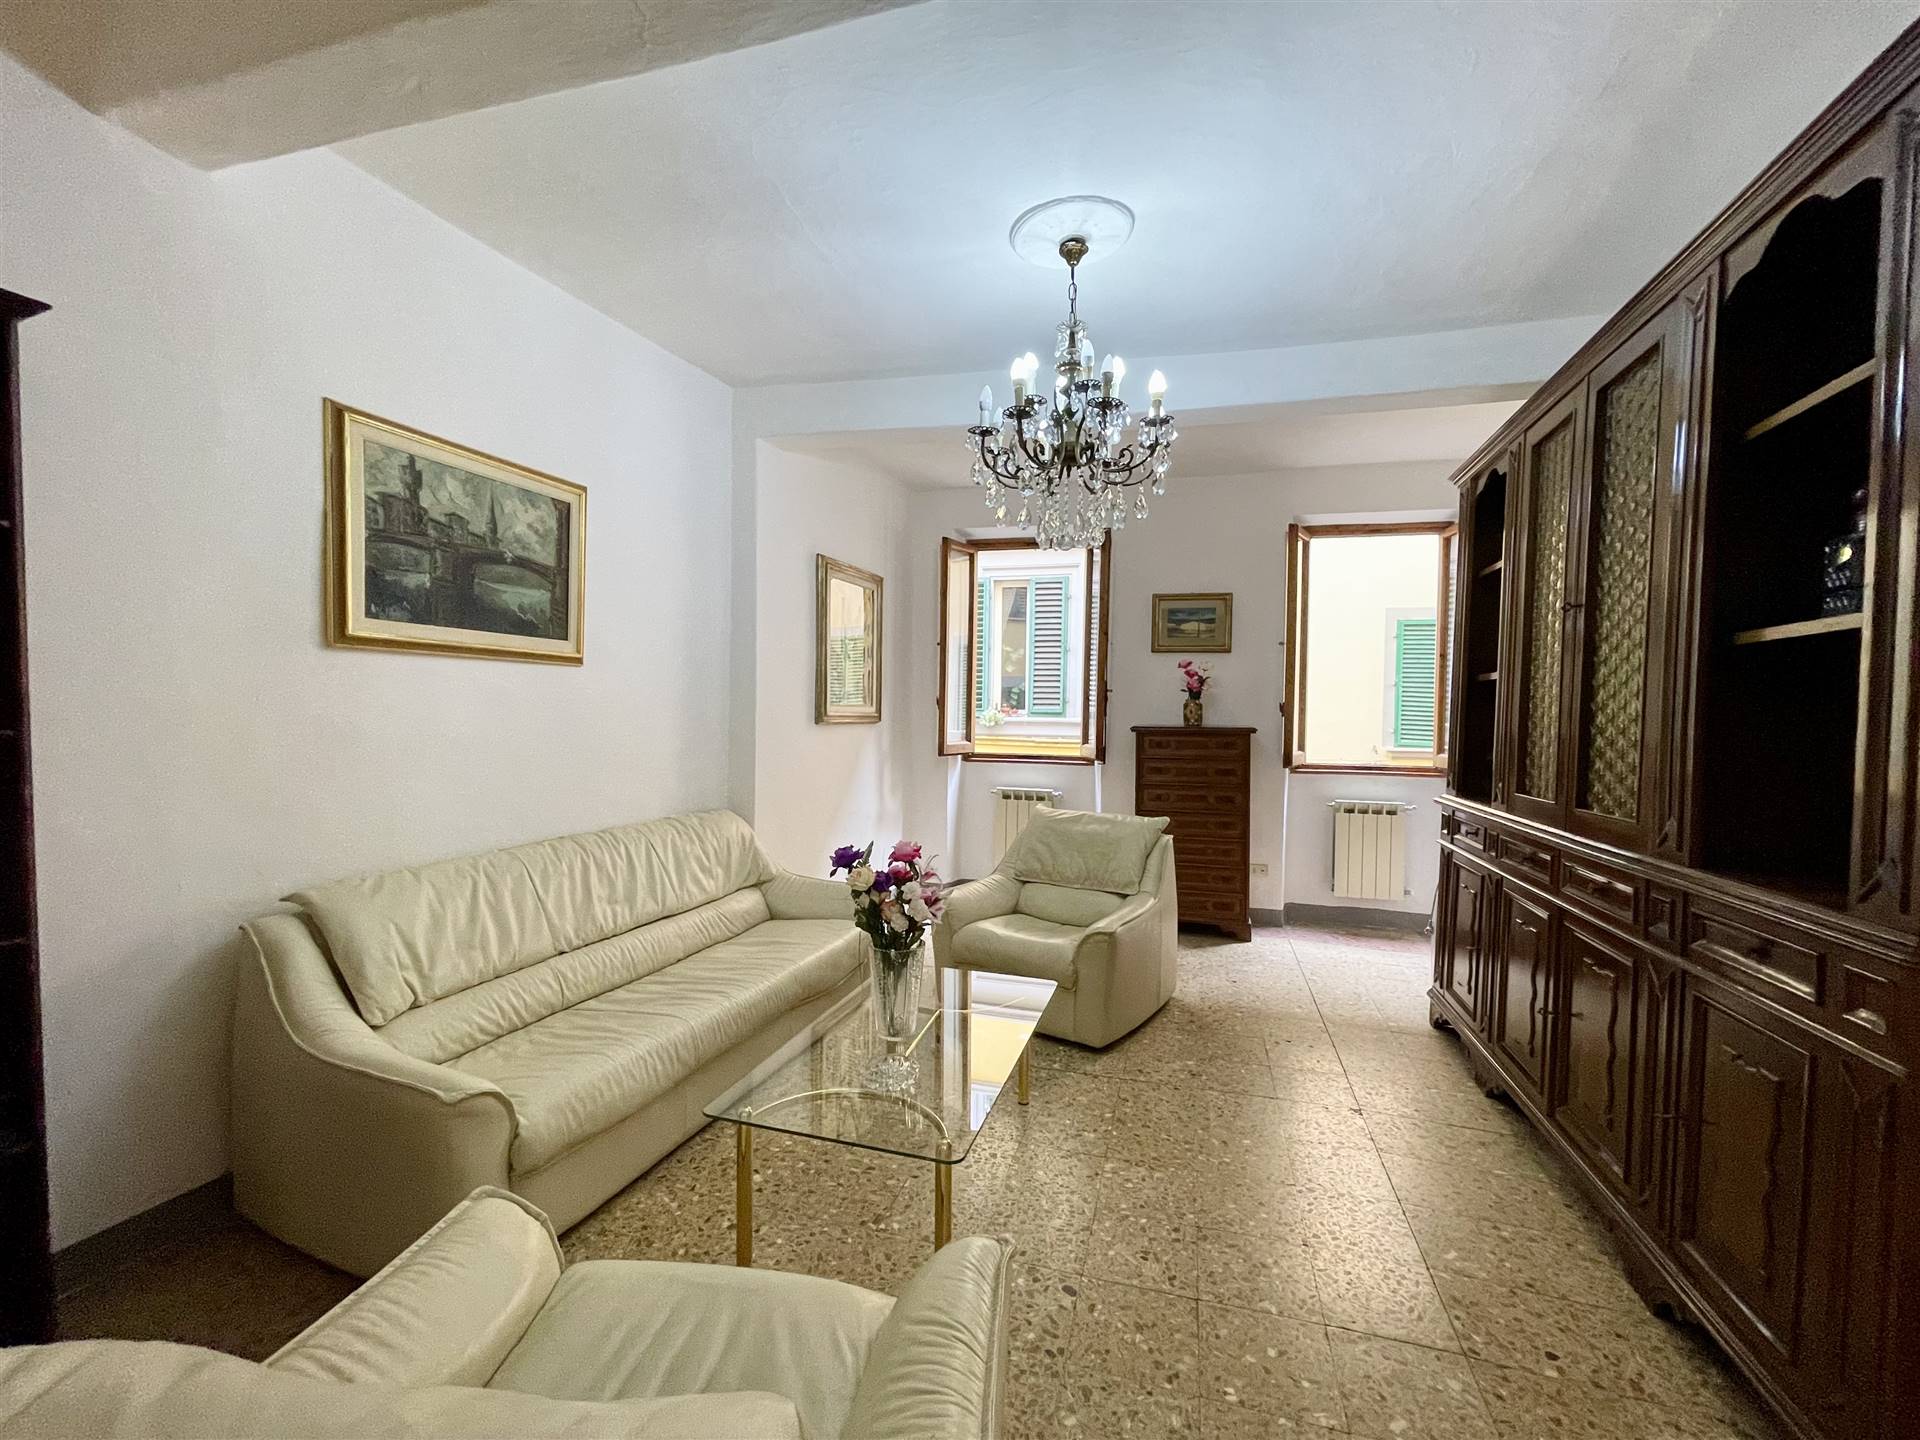 Appartamento in vendita a Firenze Santa Croce